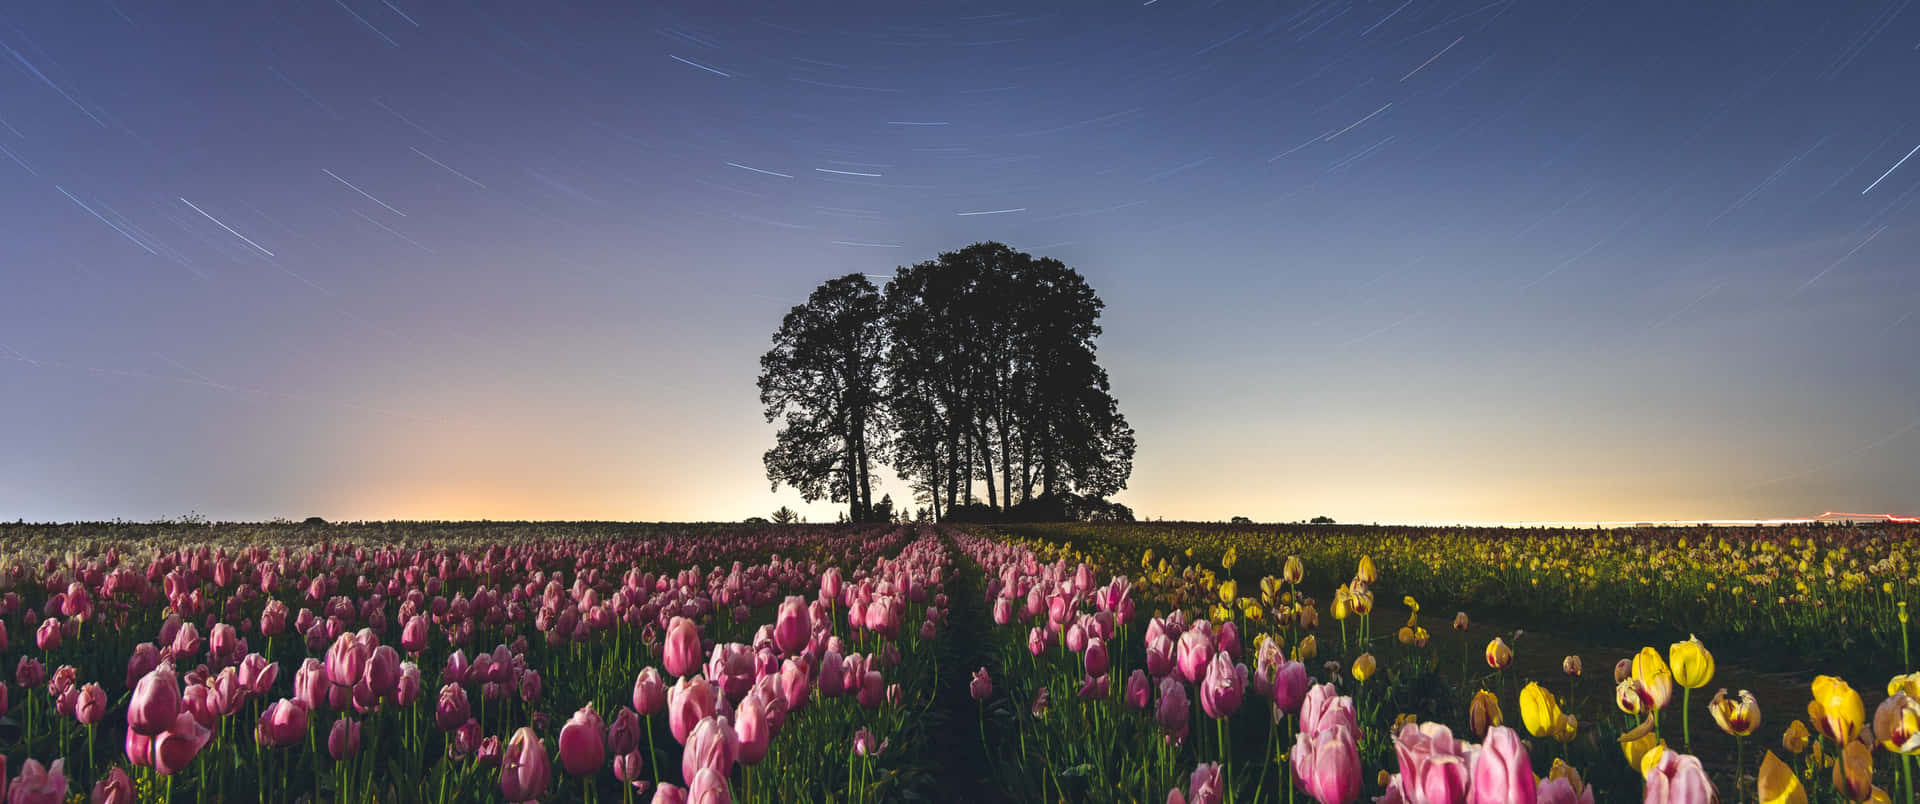 Vibrant tulip field under a blue sky Wallpaper